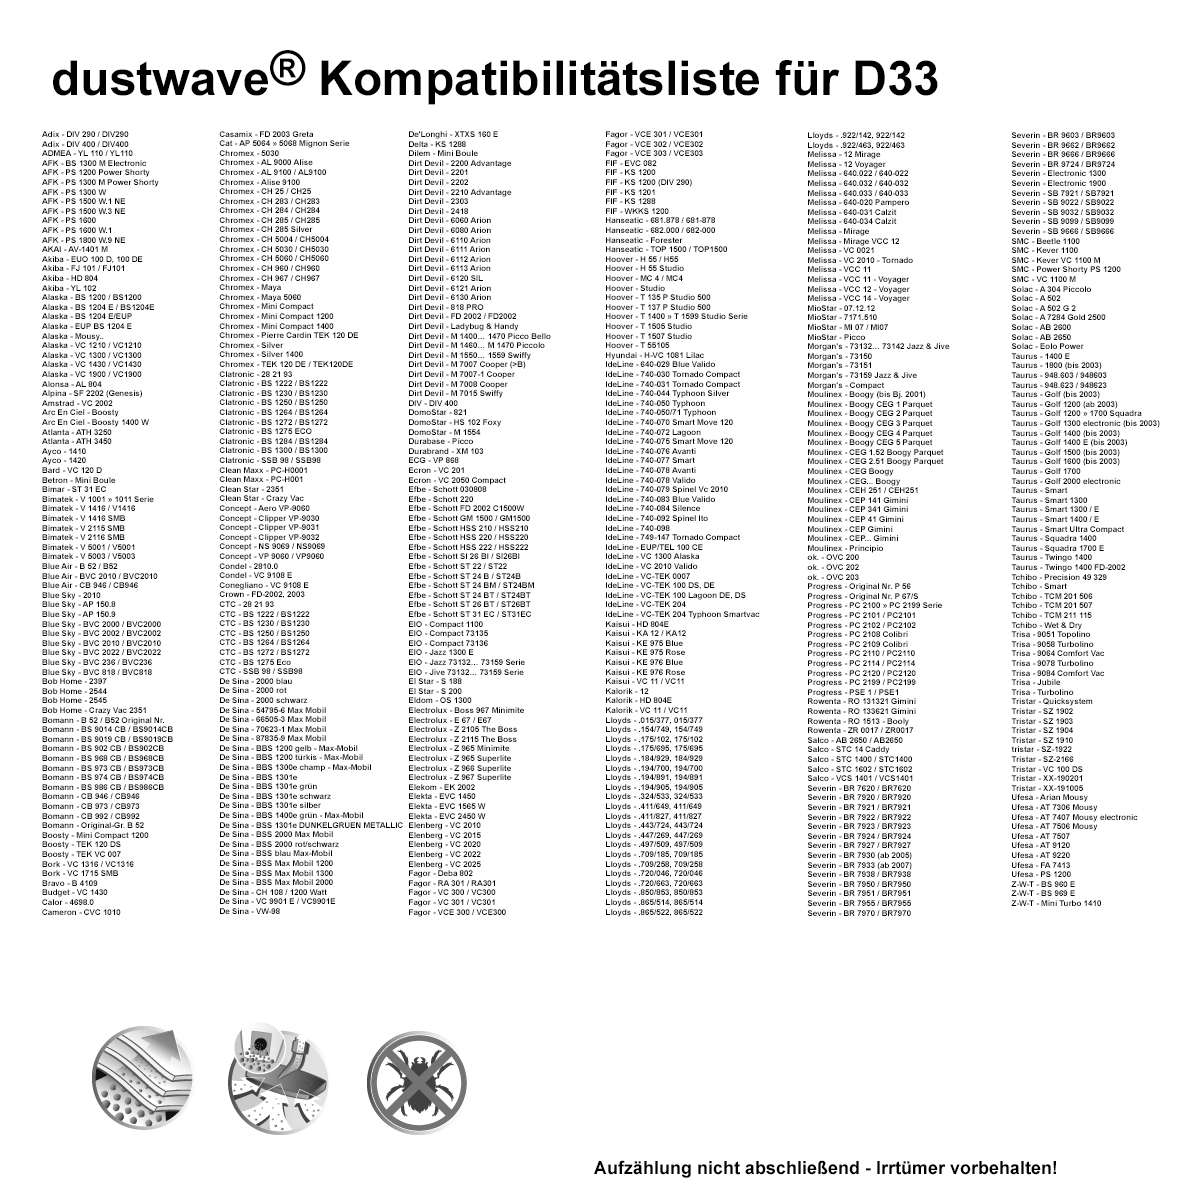 Dustwave® 20 Staubsaugerbeutel für Ayco 1410 - hocheffizient, mehrlagiges Mikrovlies mit Hygieneverschluss - Made in Germany